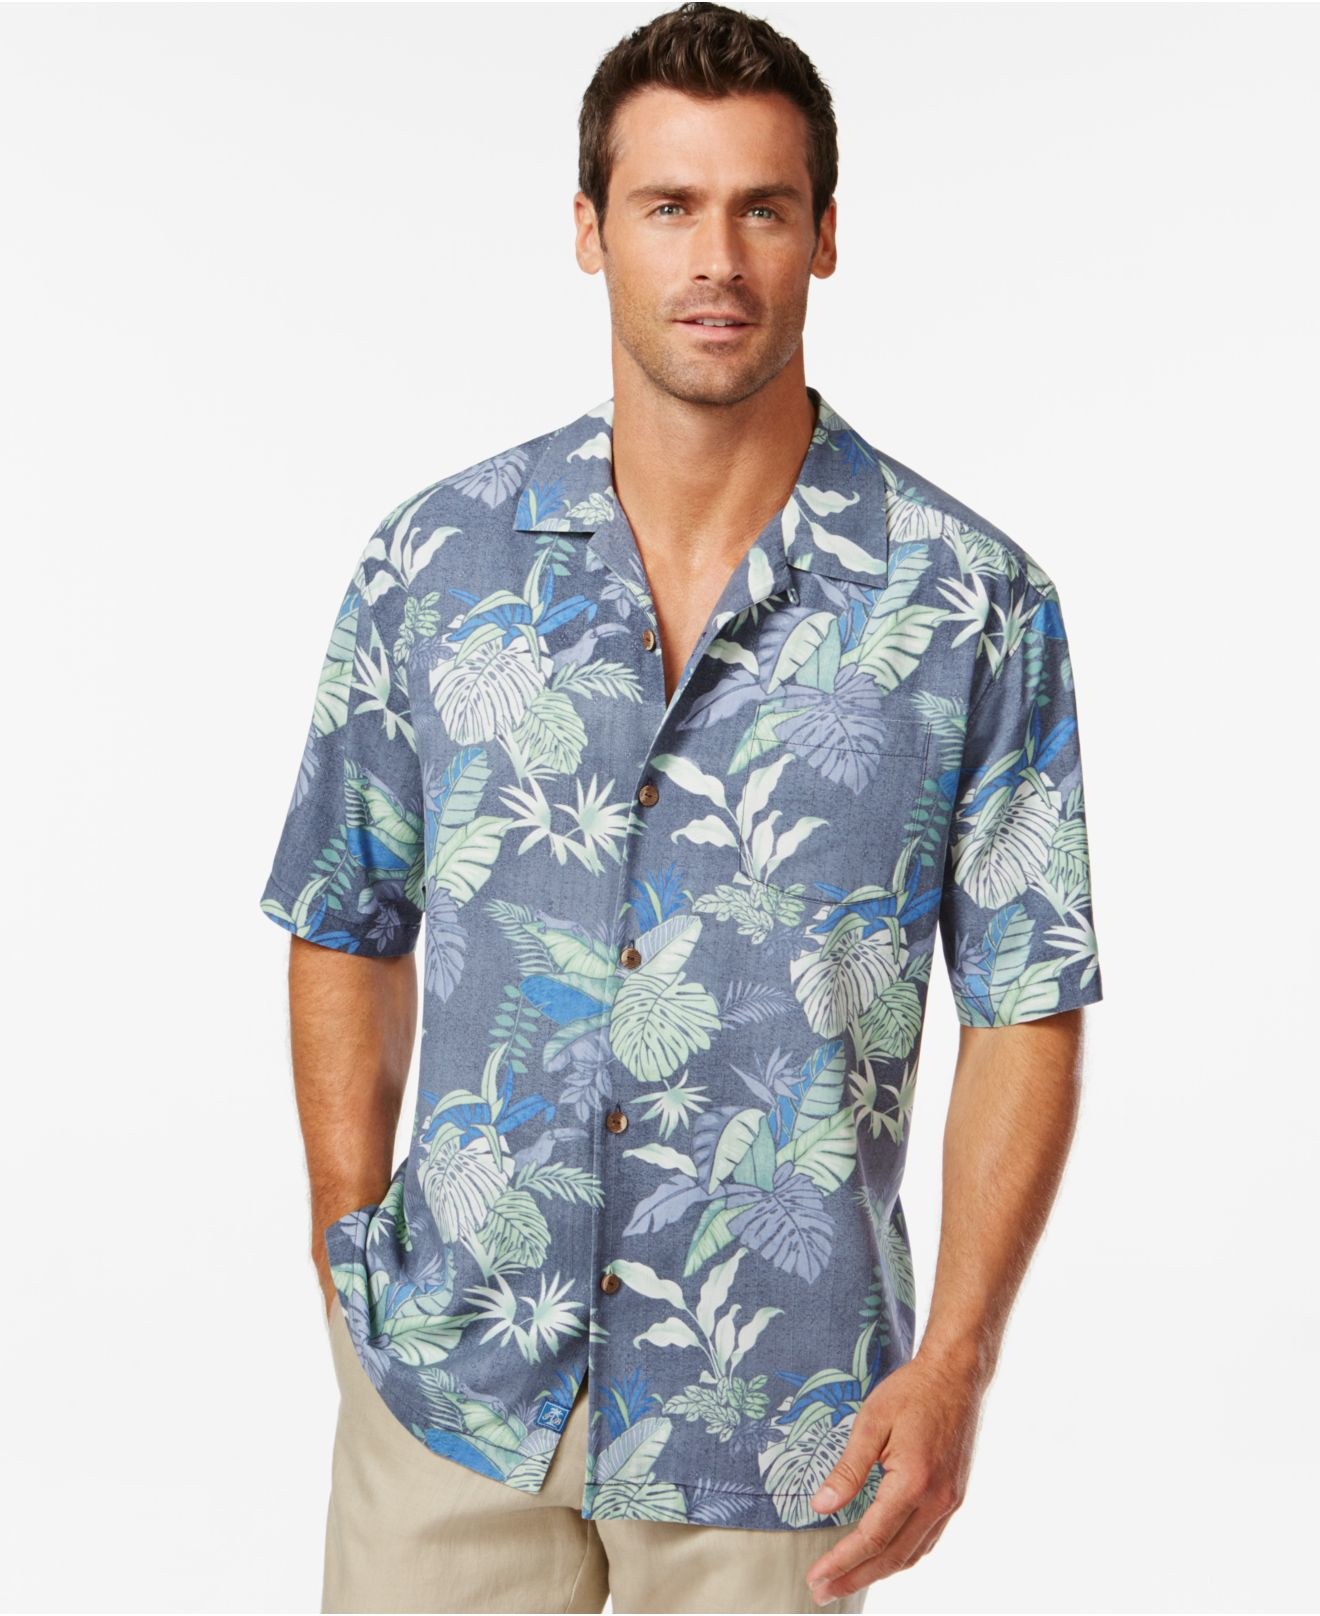 tommy bahama shirts canada